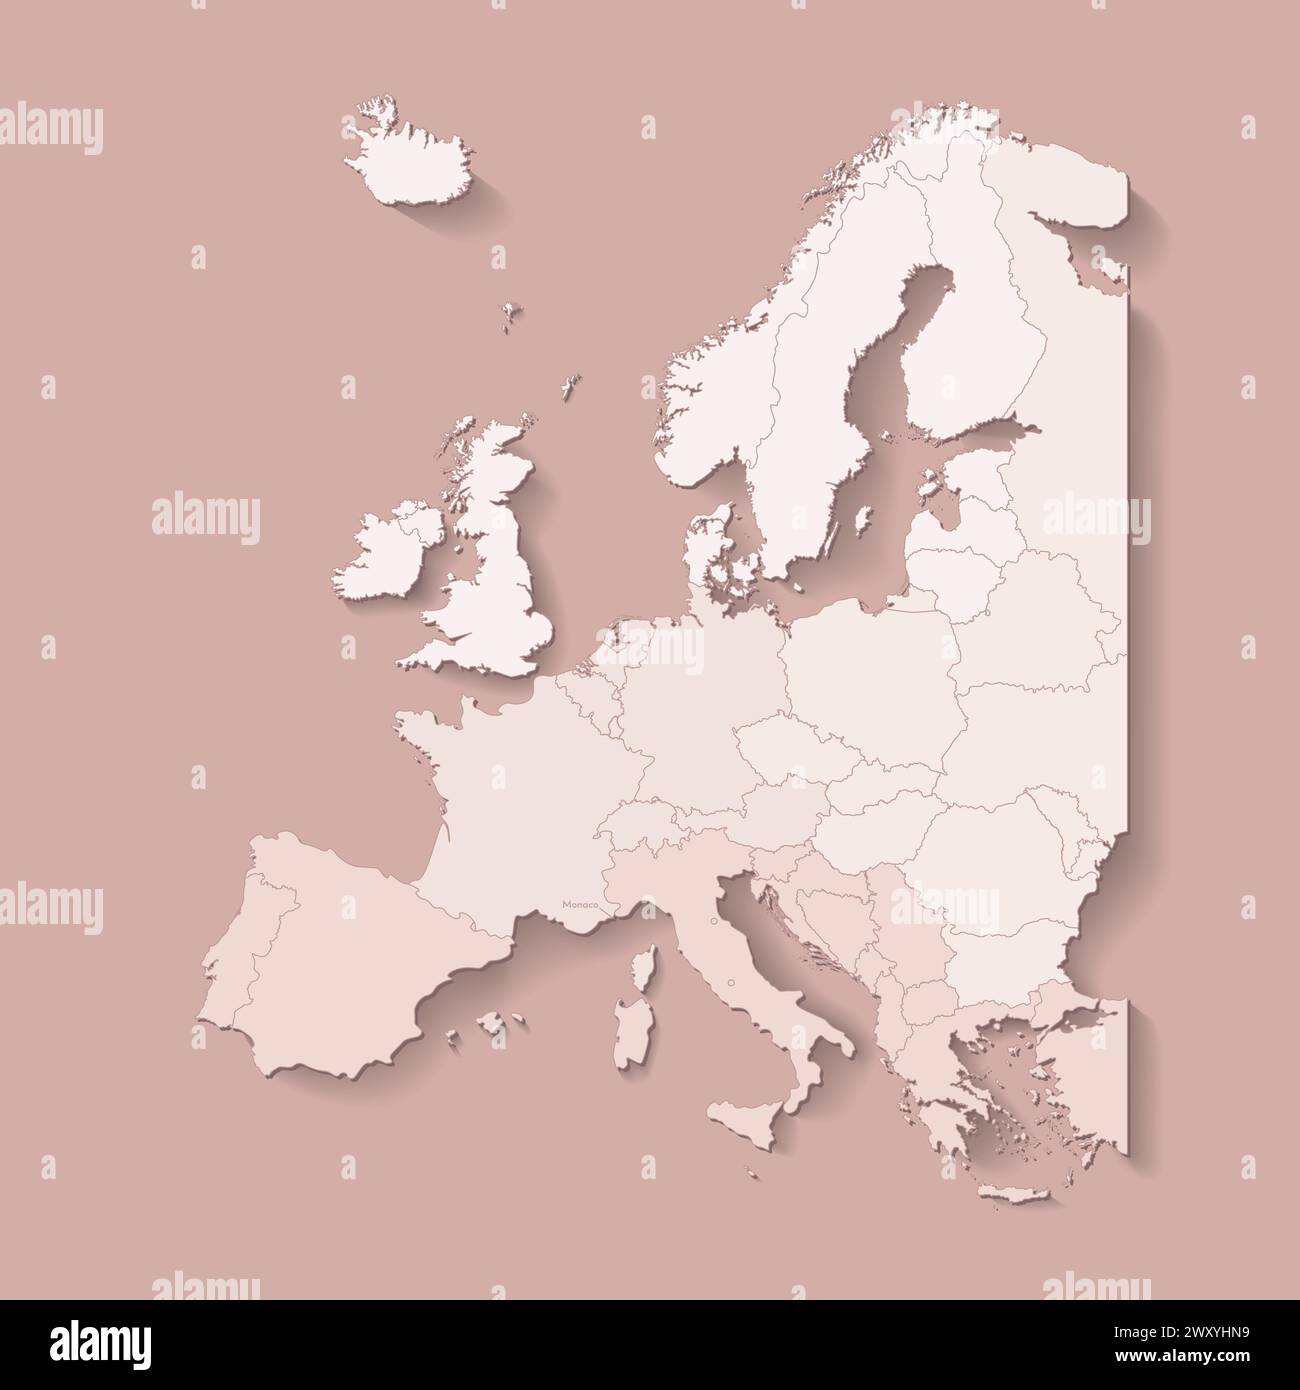 Illustrazione vettoriale con terra europea con confini di stati e paese contrassegnato Monaco. Mappa politica in colori marroni con occidentale, sud e così via Illustrazione Vettoriale